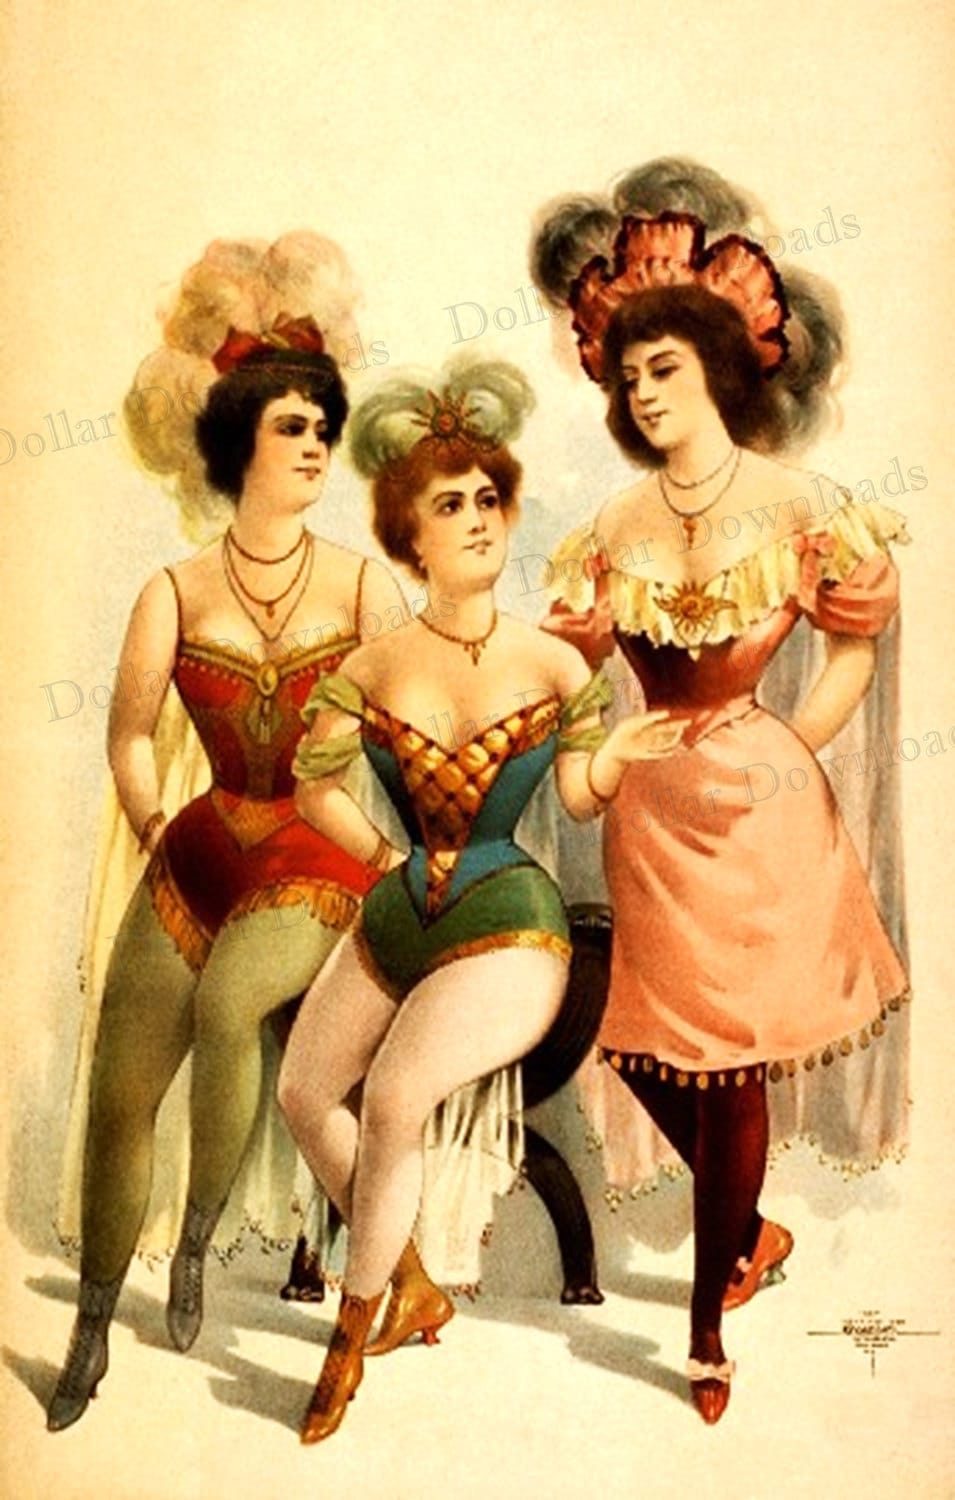 Vintage Burlesque Images